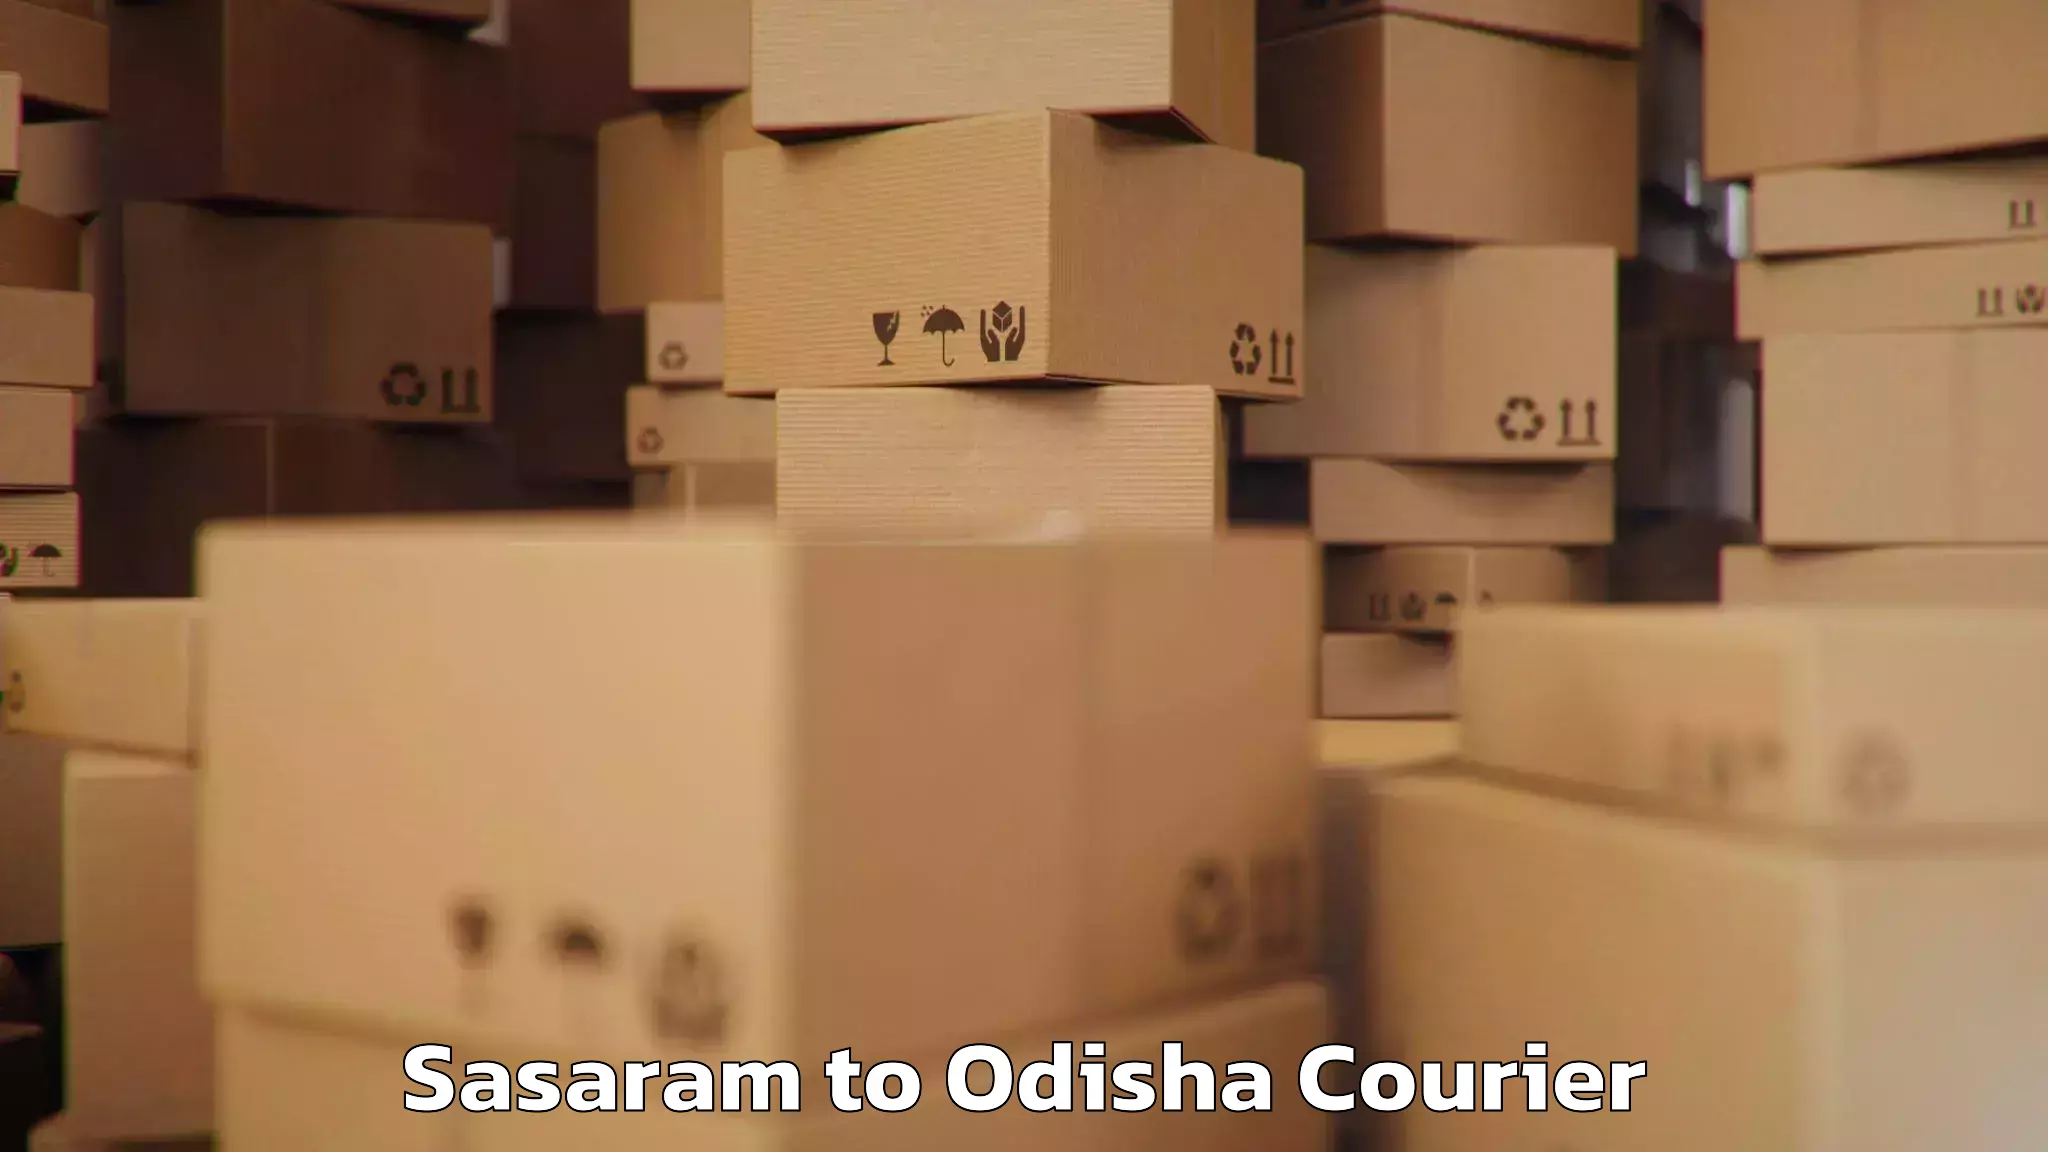 Baggage shipping rates calculator Sasaram to Sambalpur